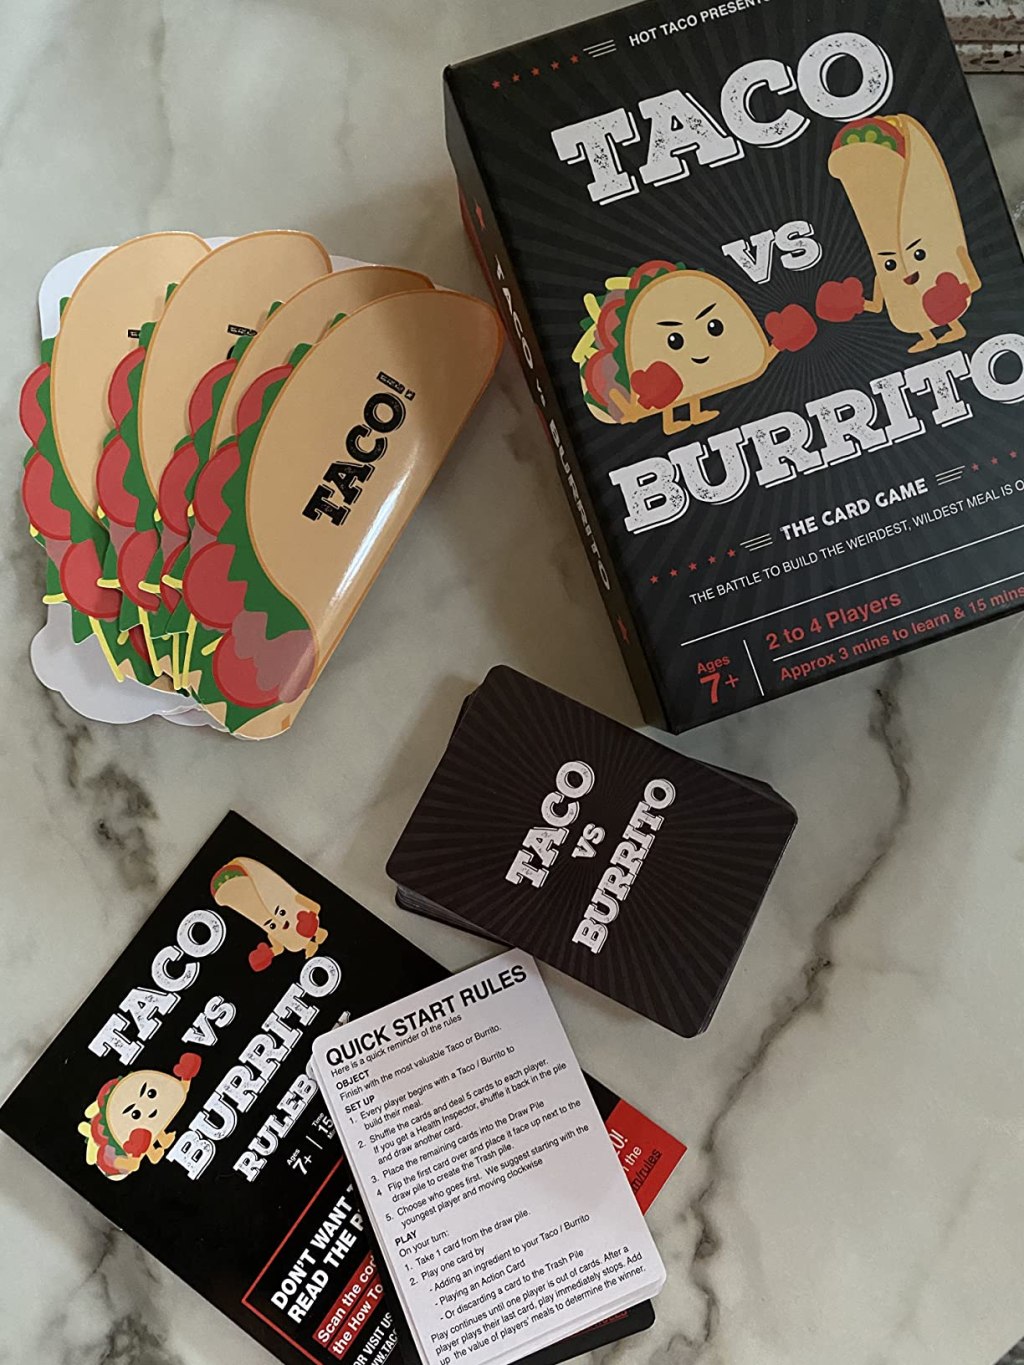 Contents of Taco vs Burrito